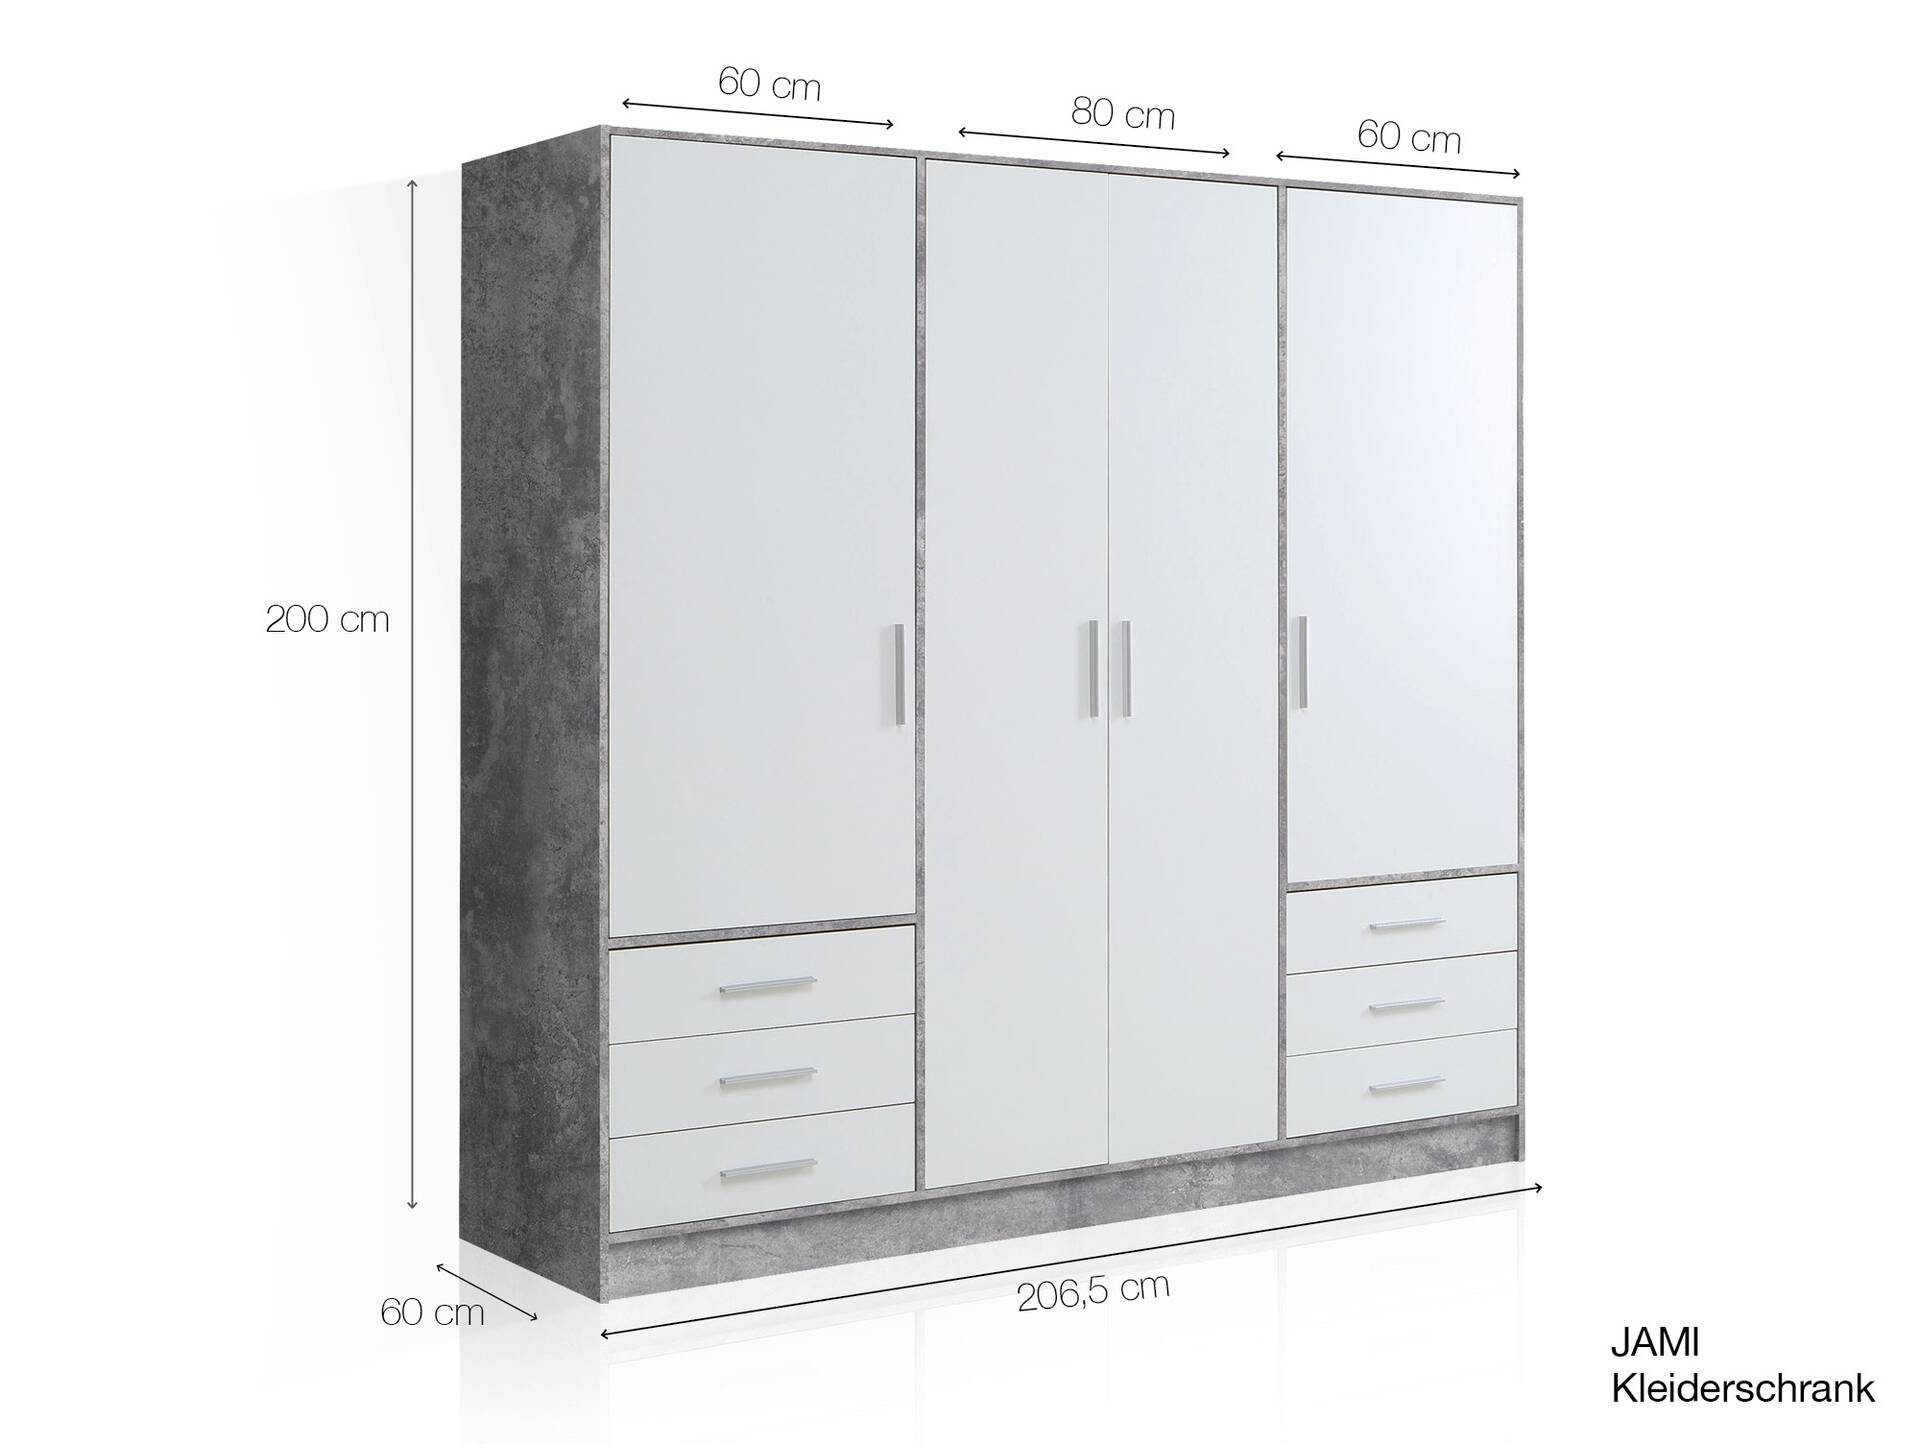 JAMI Kleiderschrank 4-trg. mit 6 Schubkästen, Material Dekorspanplatte betonfarbig/weiss